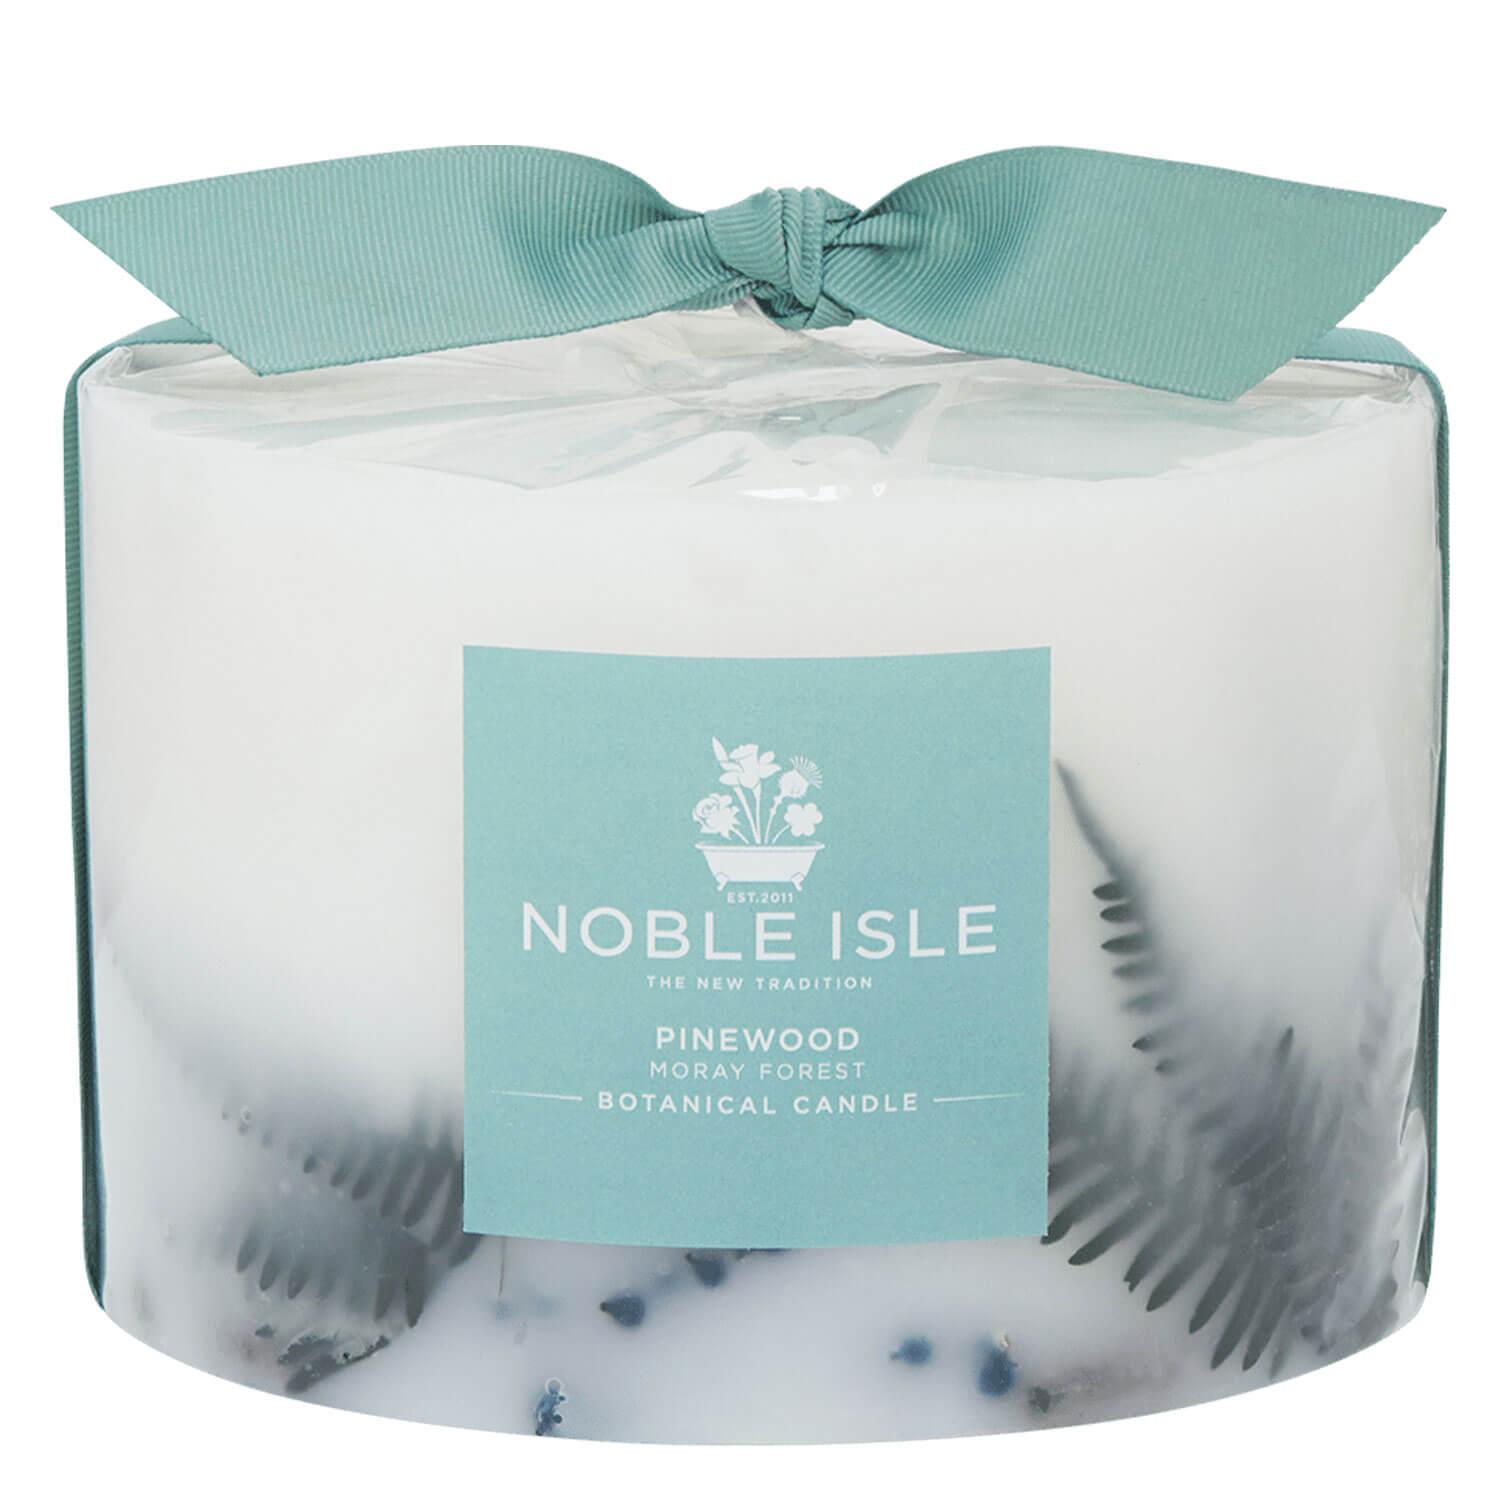 Noble Isle - Pinewood Botanical Candle